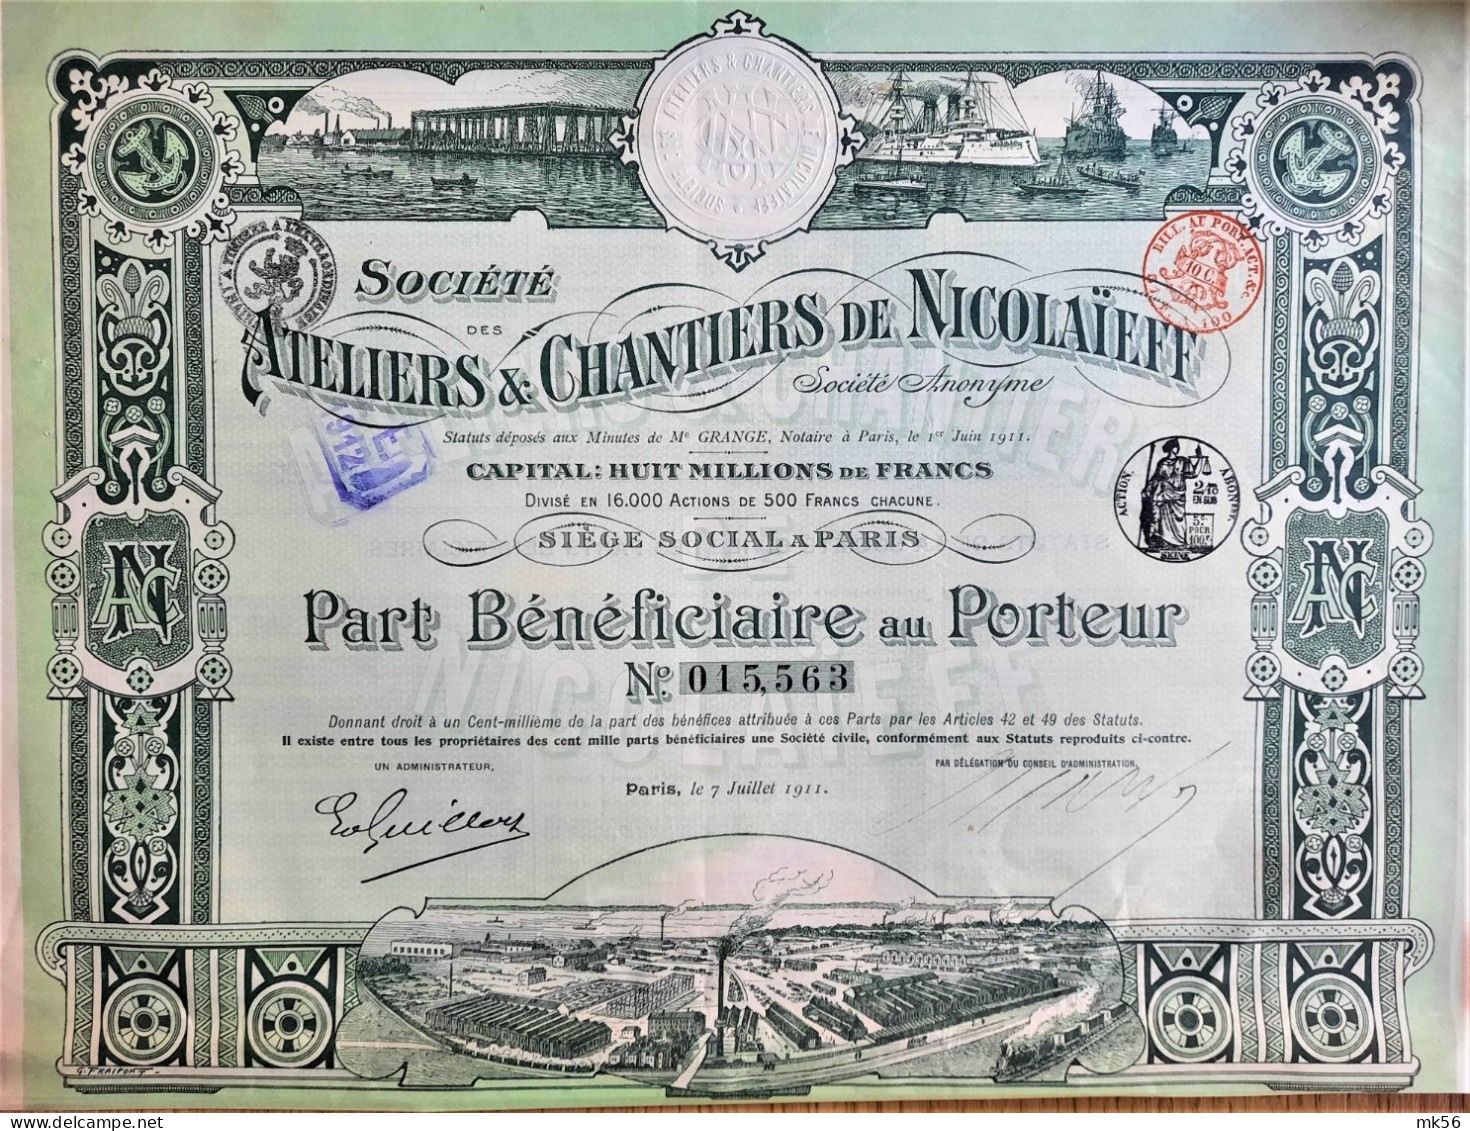 Société Des Atéliers & Chantiers De Nicolaïeff (1911) - DECO ! - Russia